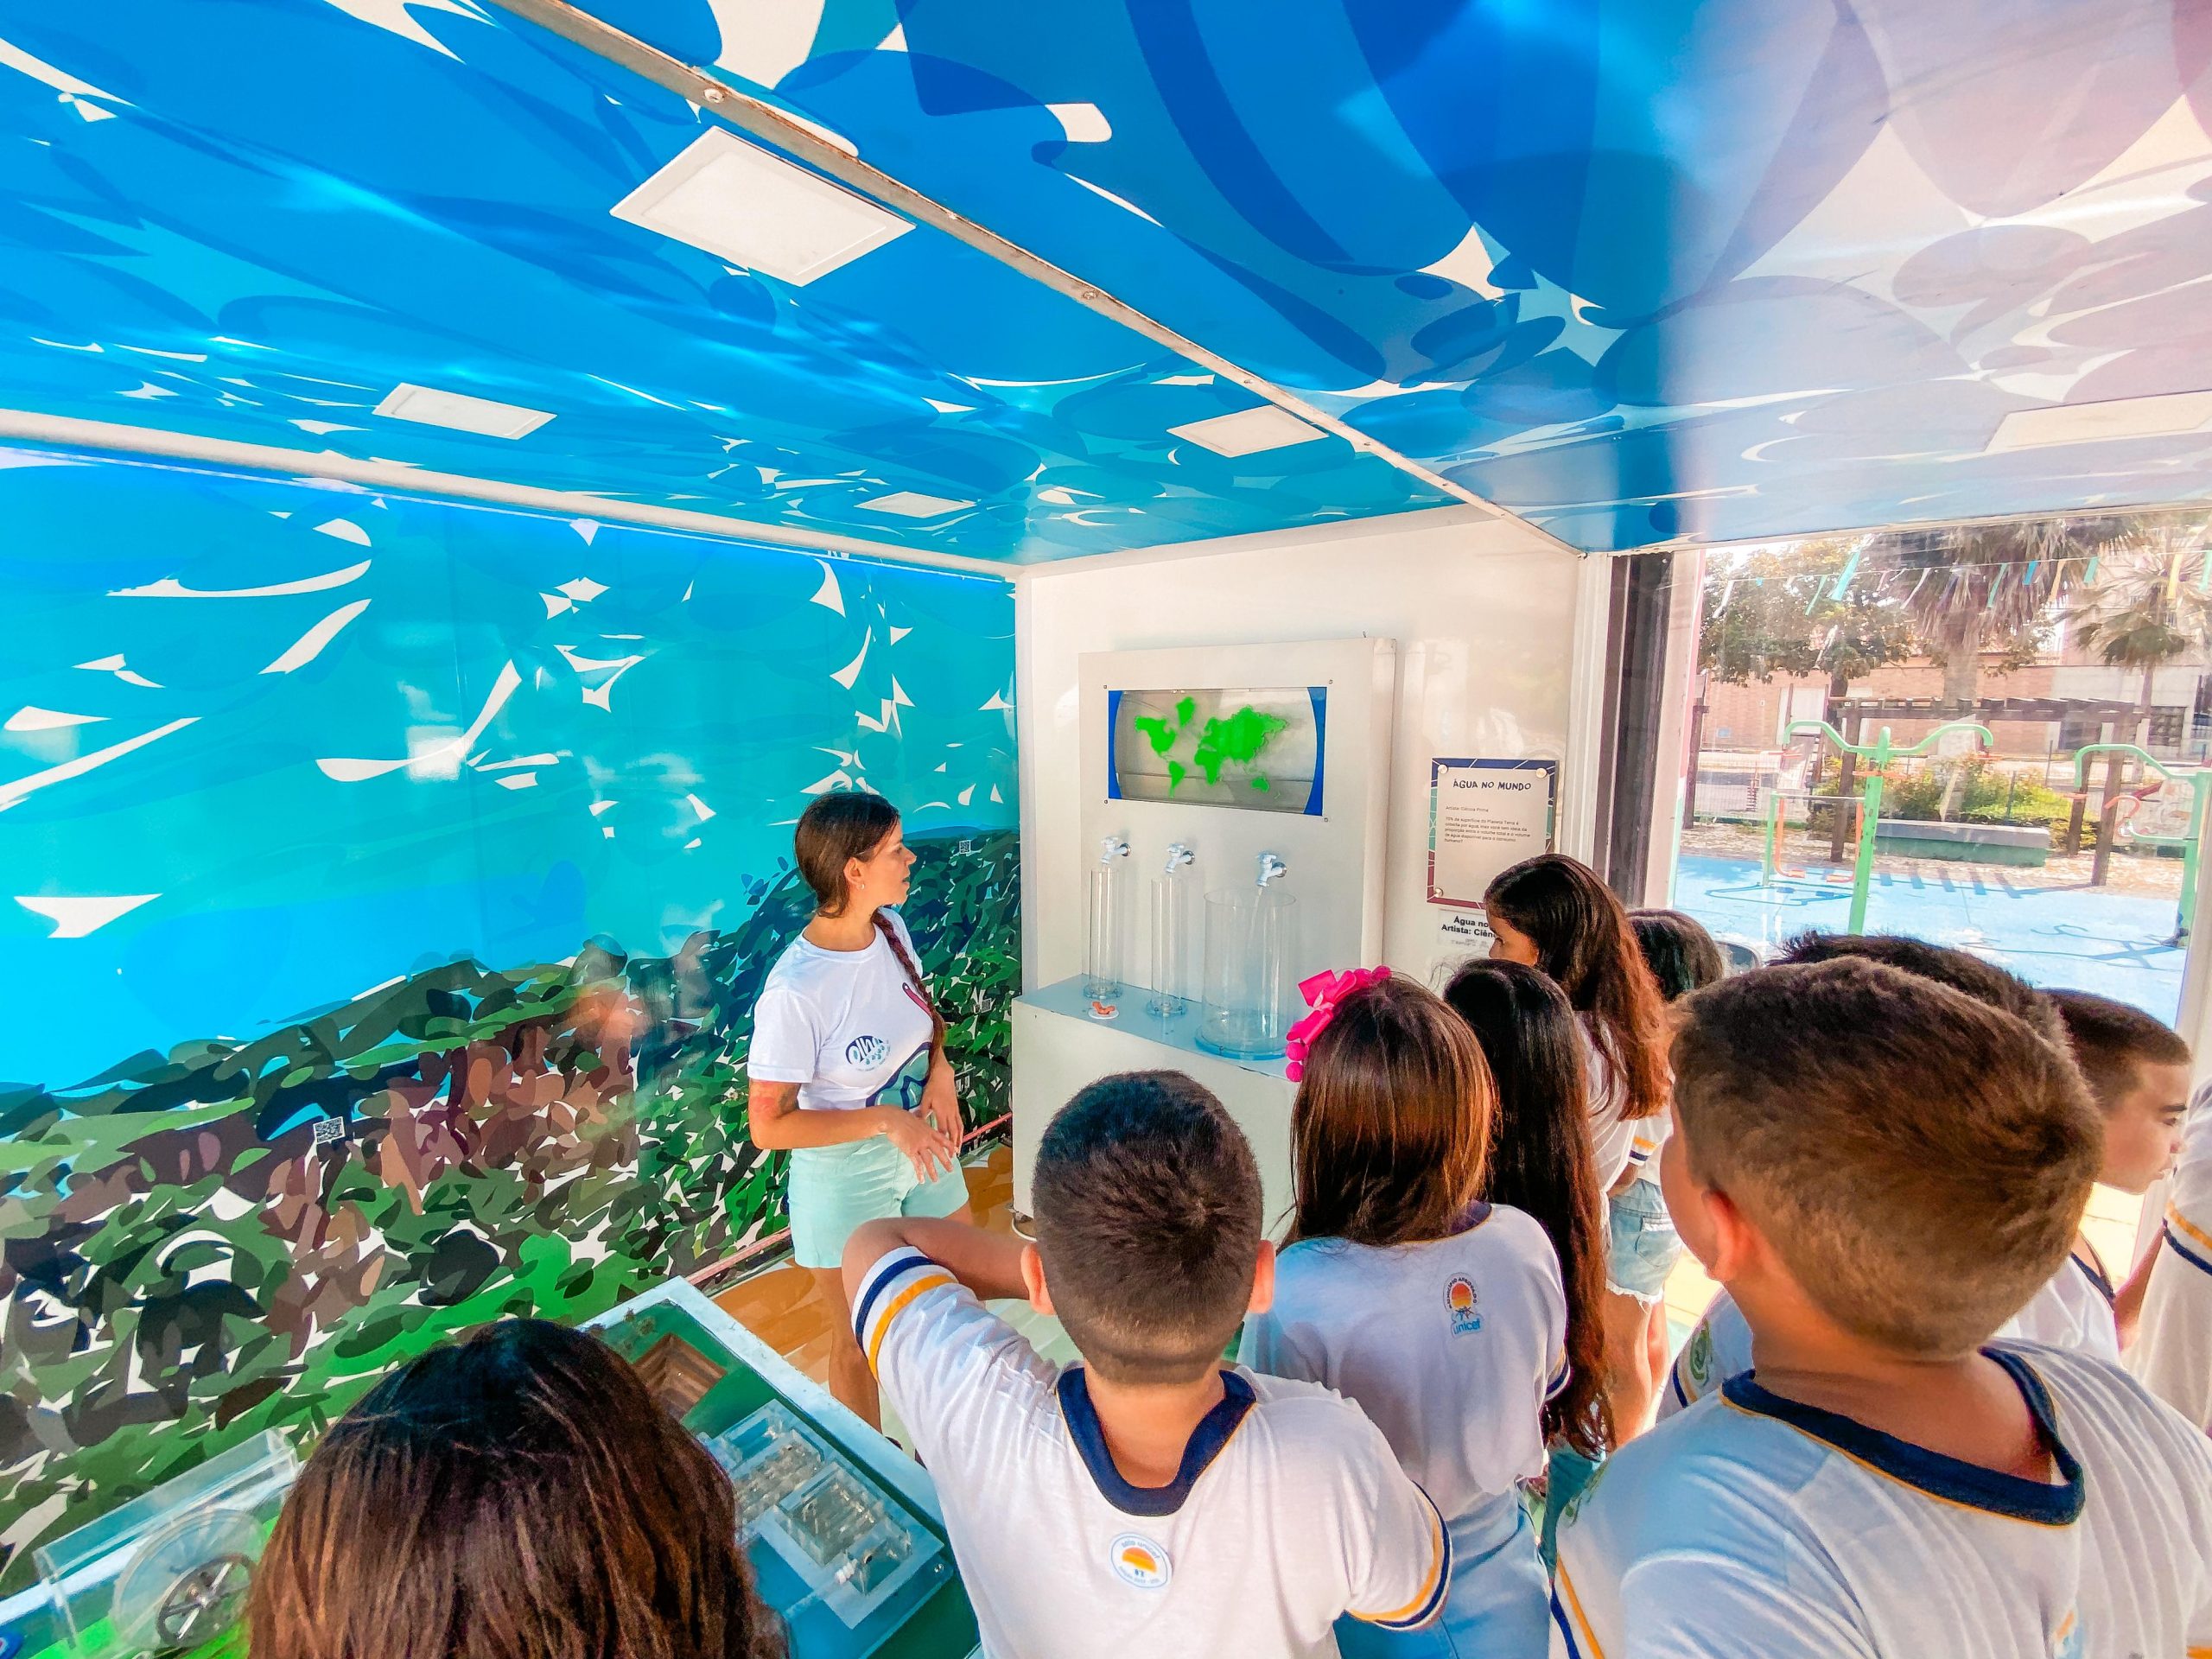 Alunos de Horizonte visitam exposição interativa sobre importância da água e meio ambiente